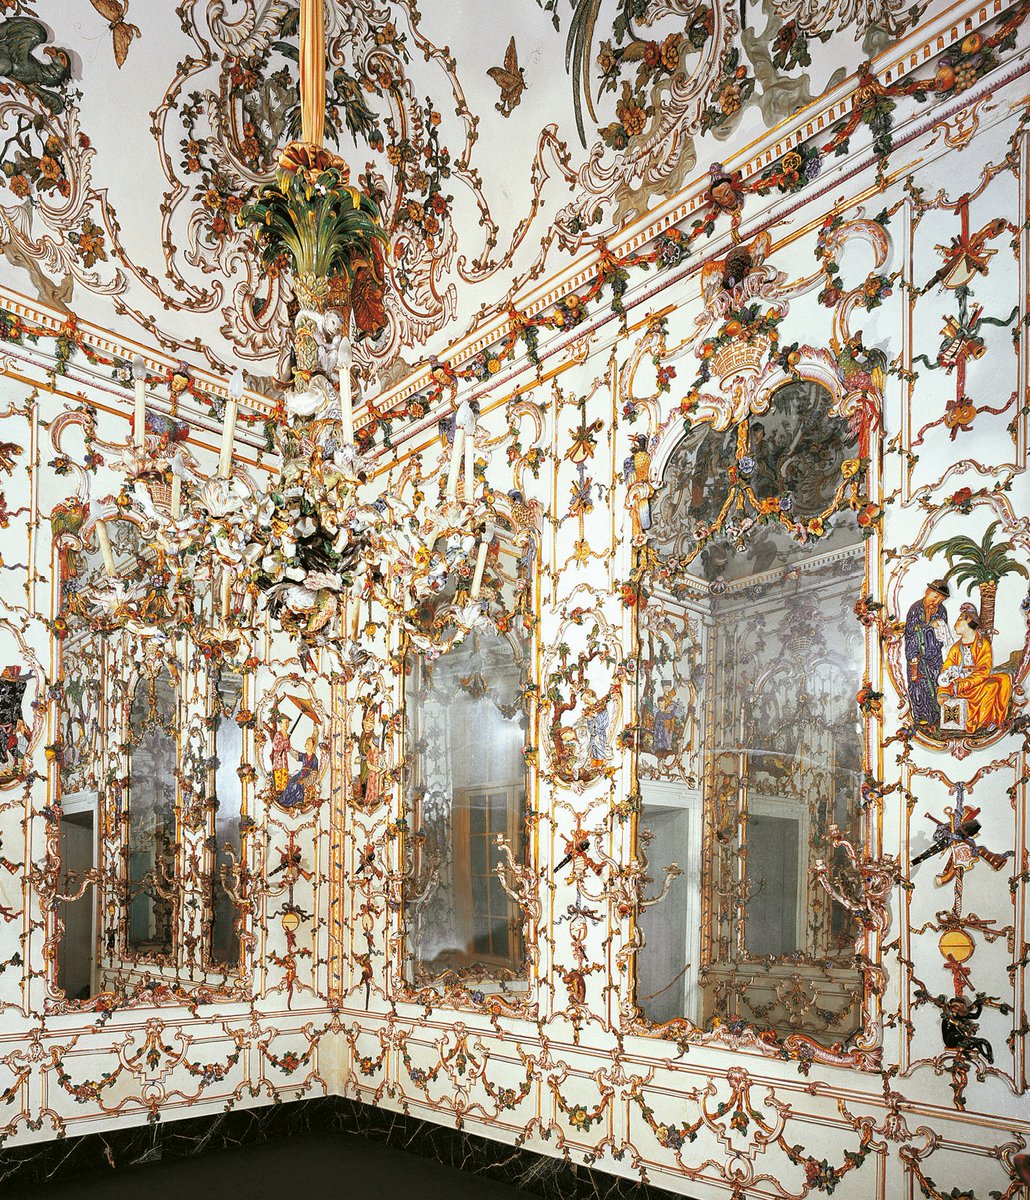 Salottino di porcellana di Maria Amalia di Sassonia.
Museo di Capodimonte, Napoli.